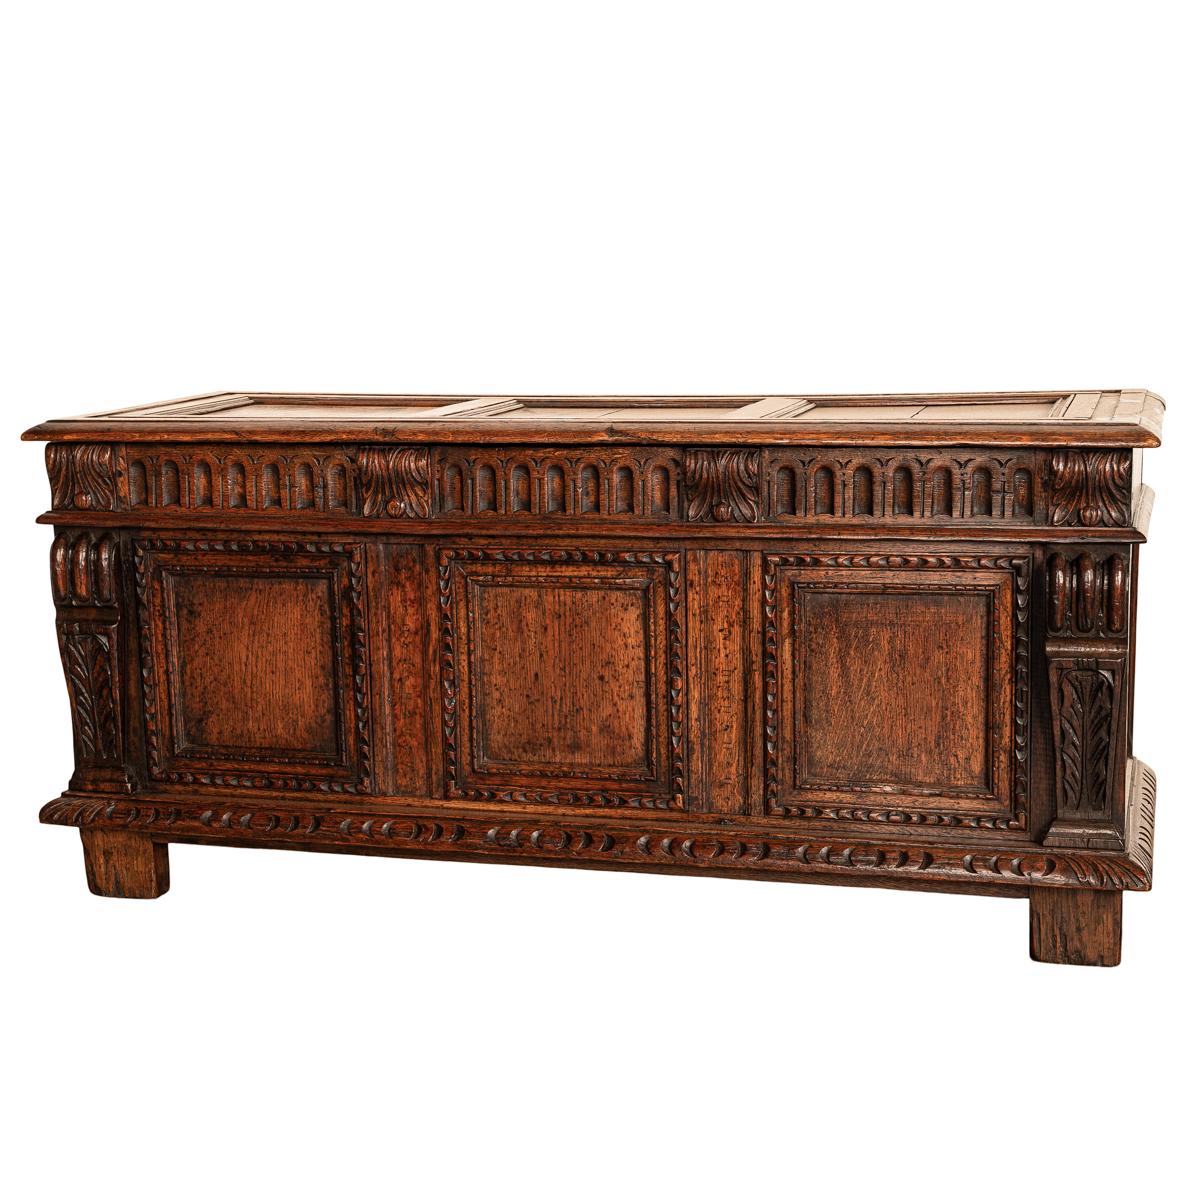 Antique Renaissance Revival Carved Oak Coffer Chest Trunk Window Bench Seat 1880 5